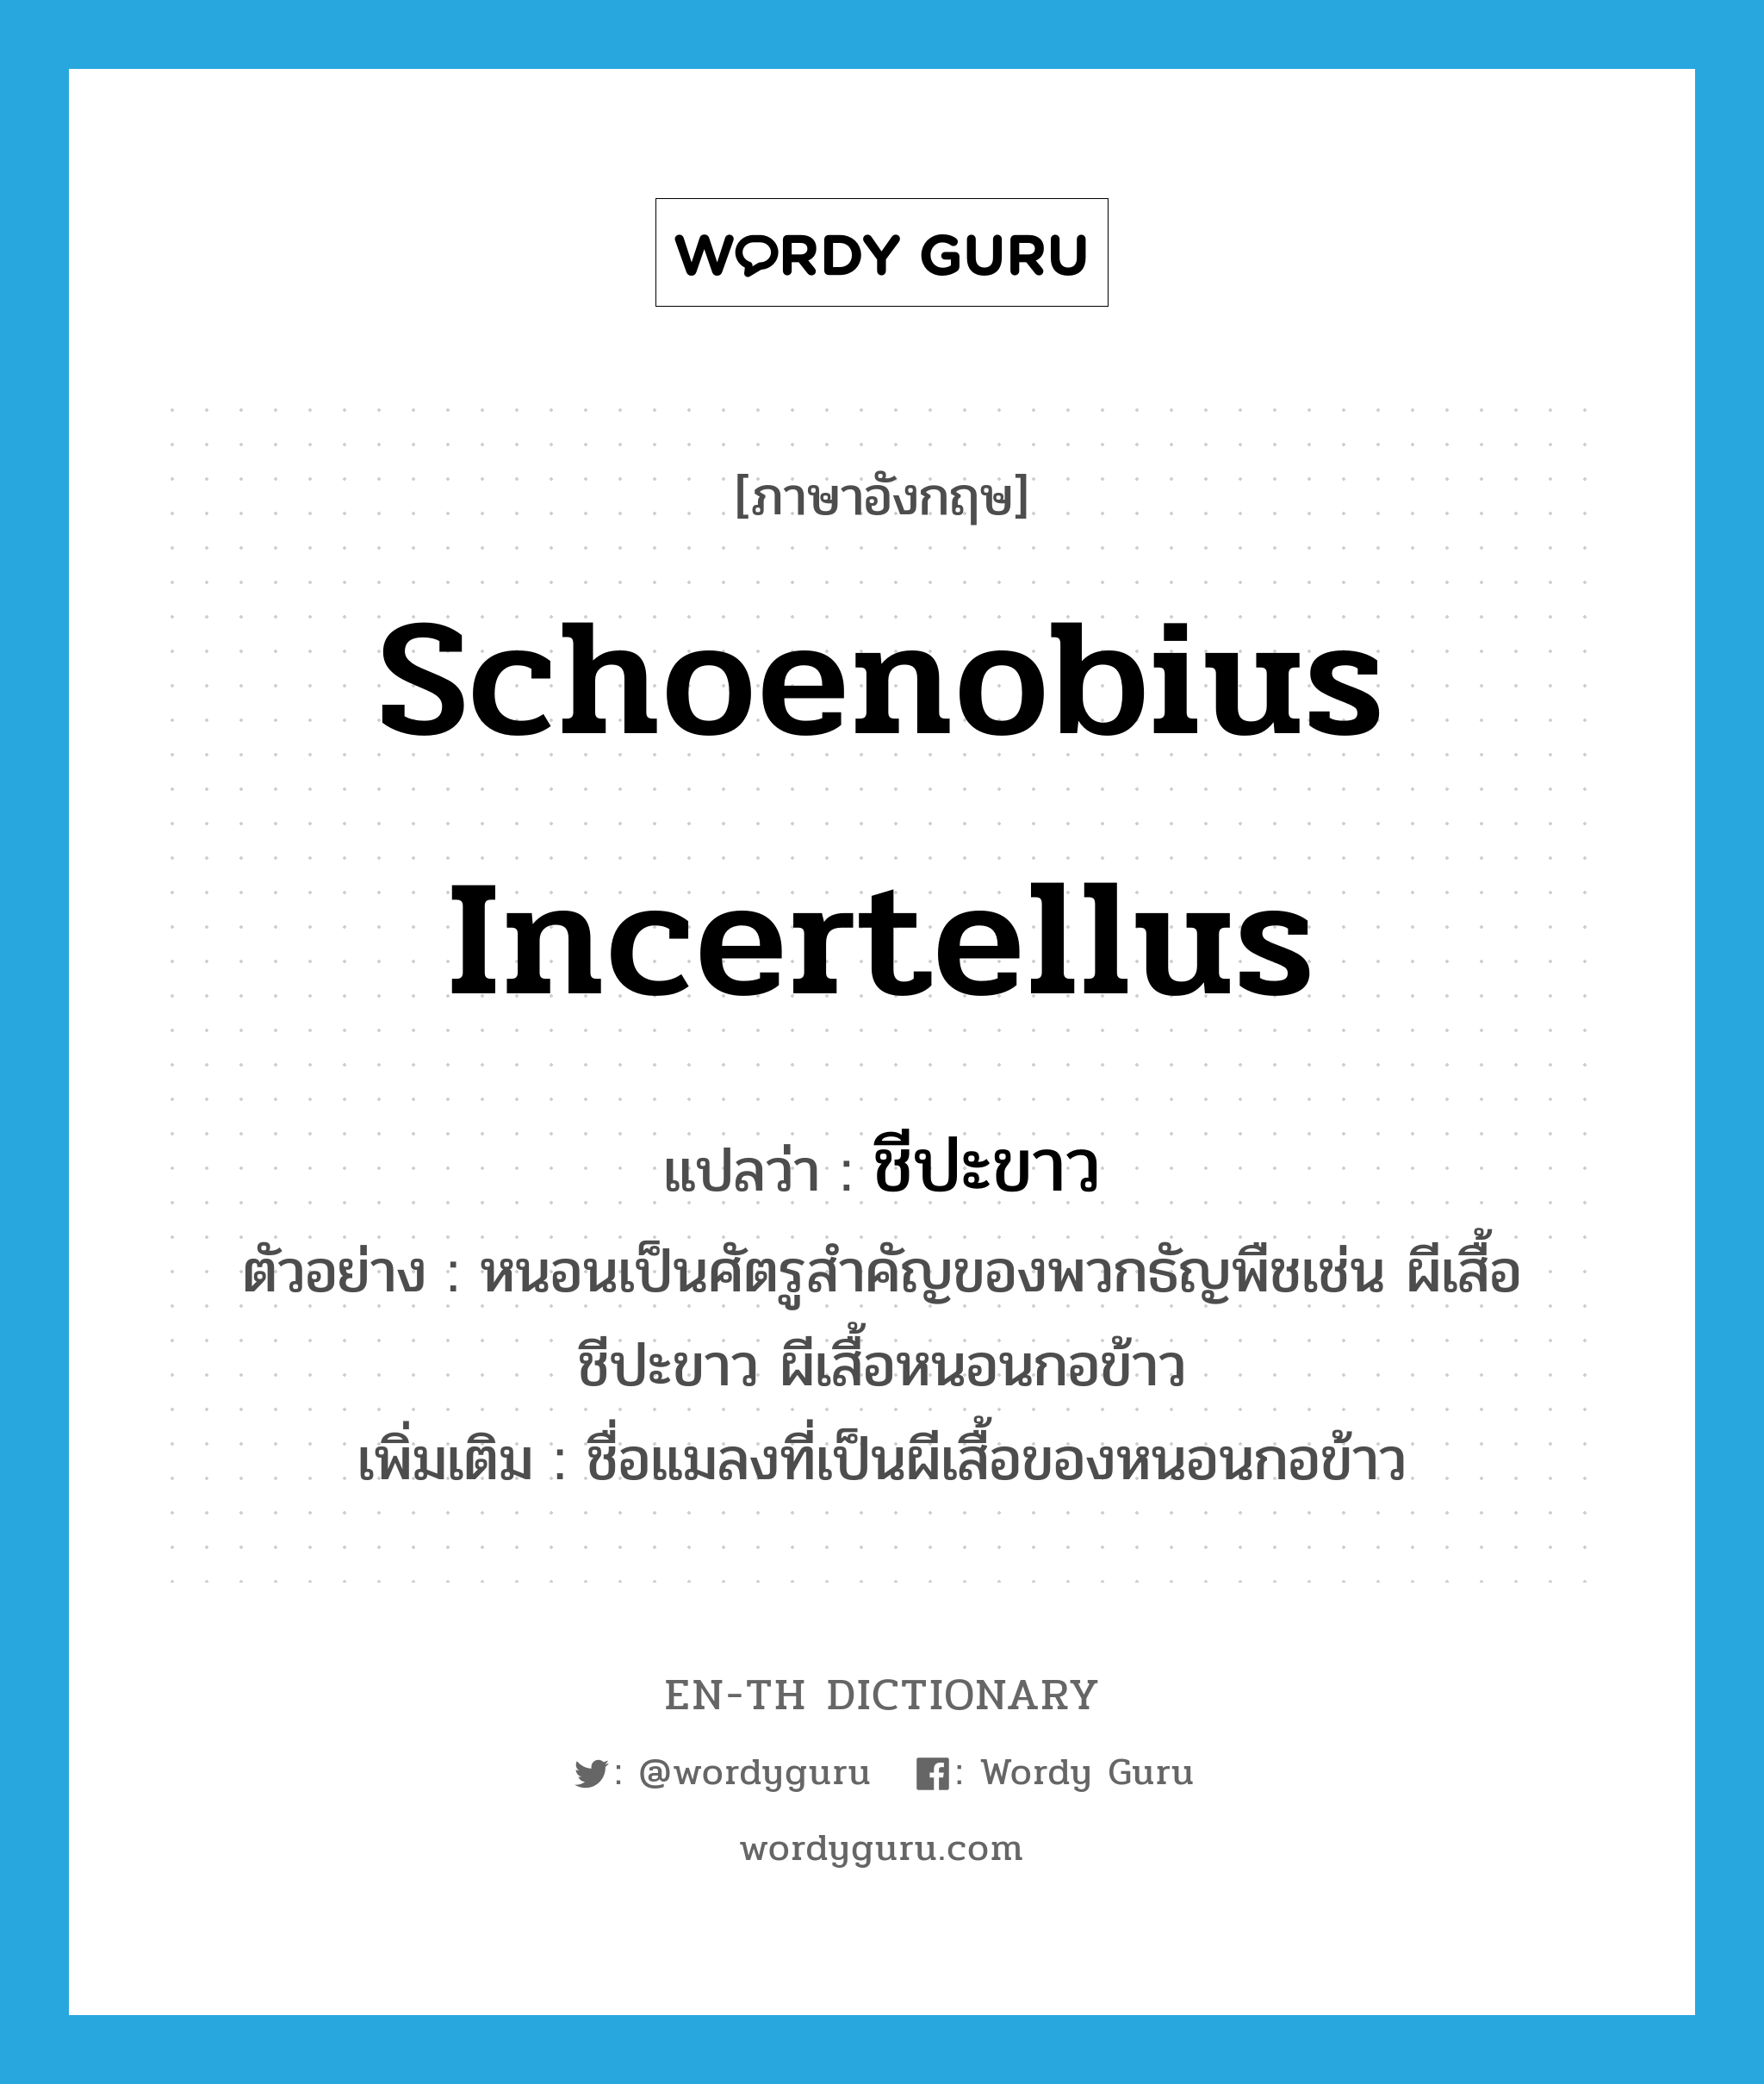 Schoenobius incertellus แปลว่า?, คำศัพท์ภาษาอังกฤษ Schoenobius incertellus แปลว่า ชีปะขาว ประเภท N ตัวอย่าง หนอนเป็นศัตรูสำคัญของพวกธัญพืชเช่น ผีเสื้อชีปะขาว ผีเสื้อหนอนกอข้าว เพิ่มเติม ชื่อแมลงที่เป็นผีเสื้อของหนอนกอข้าว หมวด N